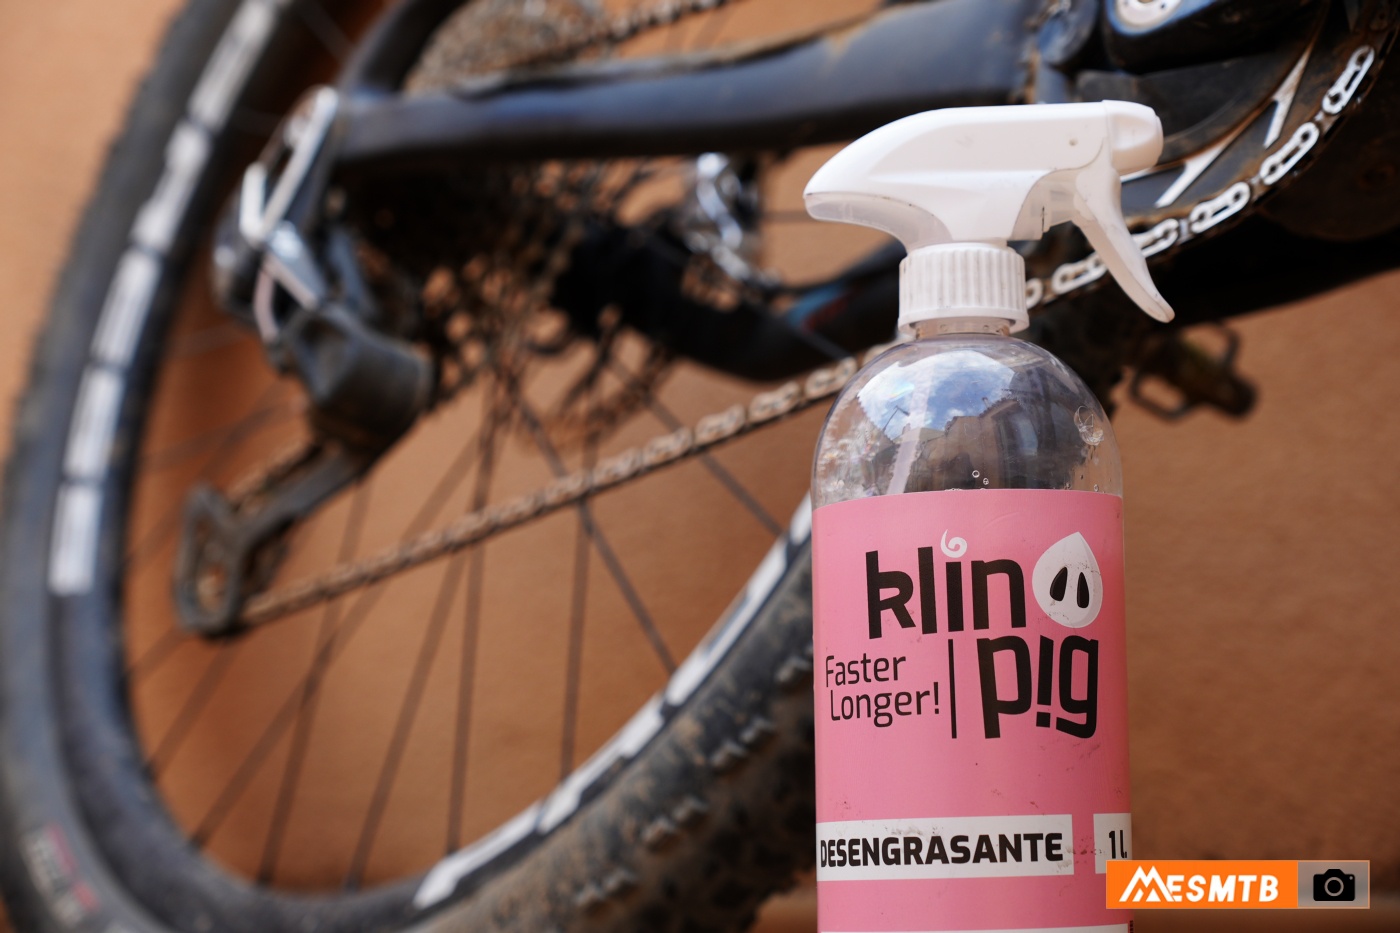 Cómo limpiar y lubricar correctamente la transmisión de la bicicleta